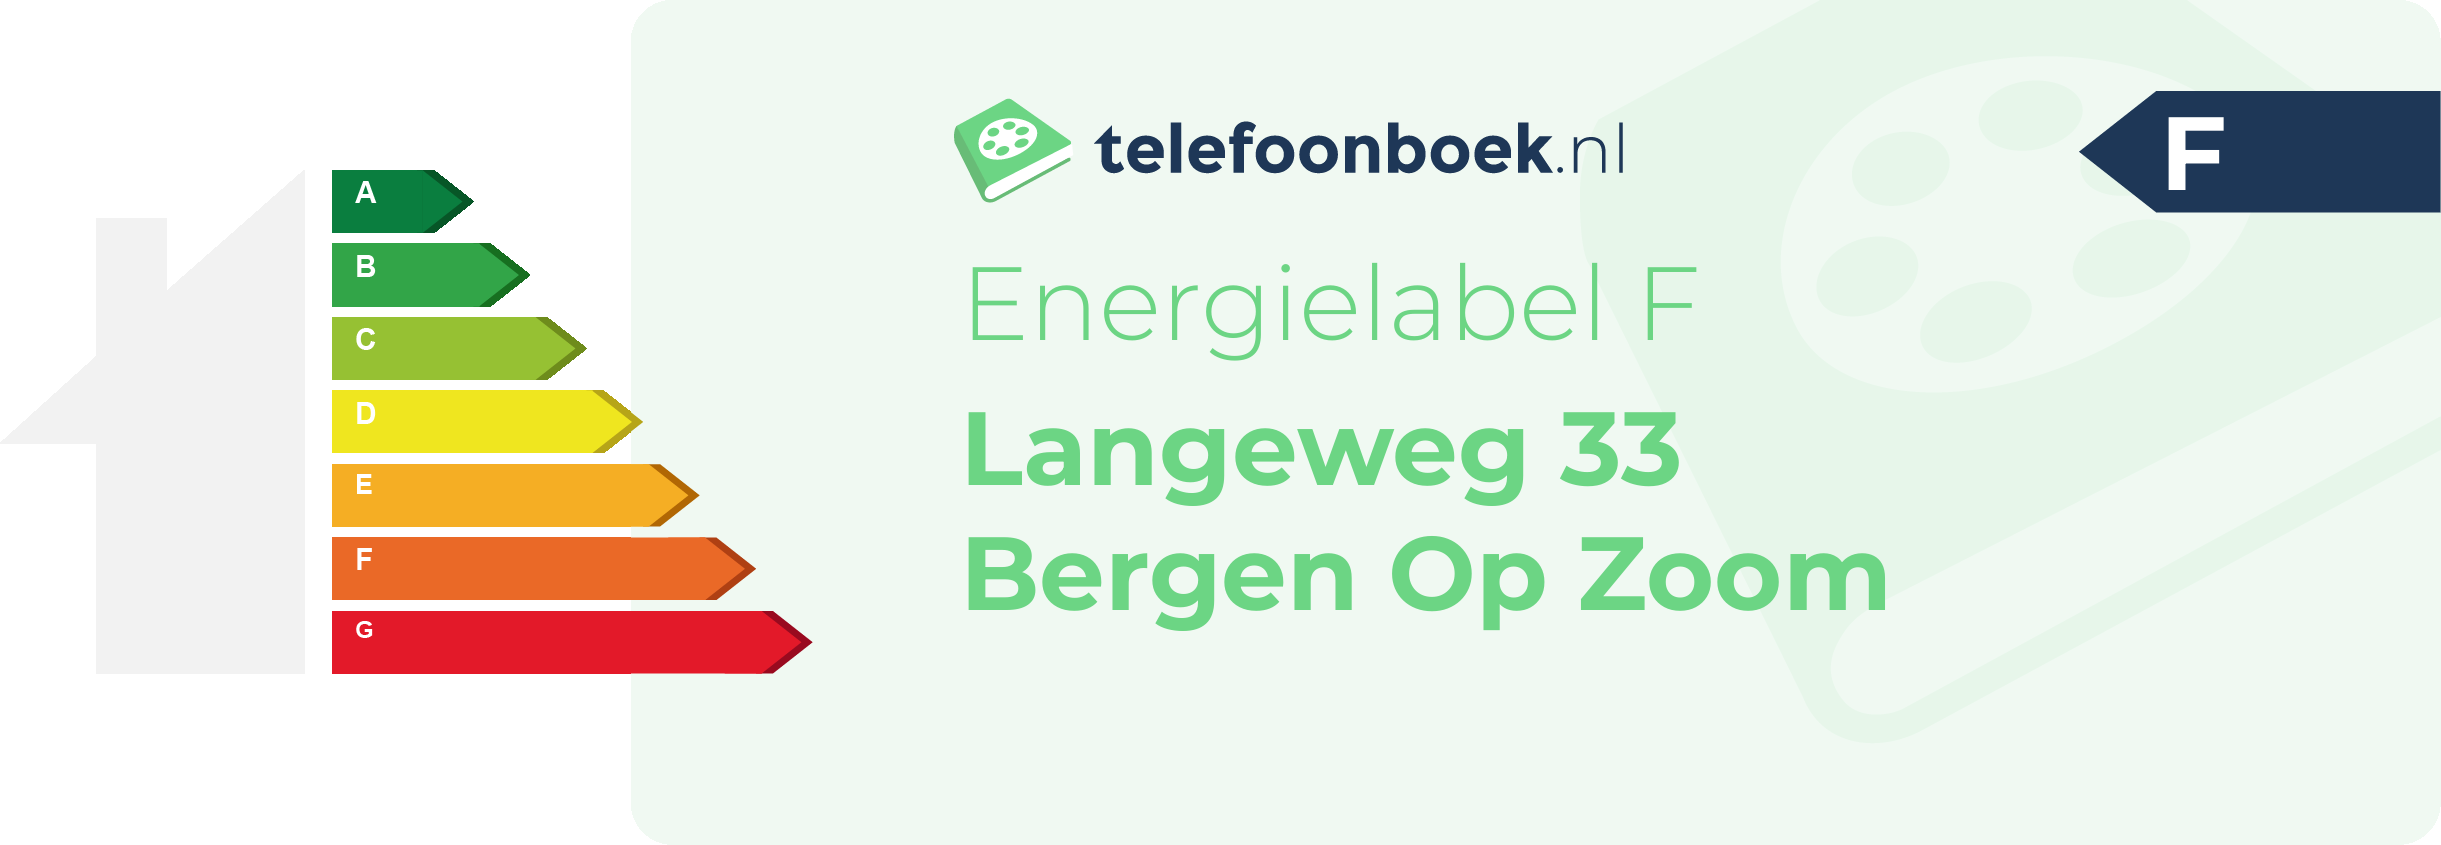 Energielabel Langeweg 33 Bergen Op Zoom